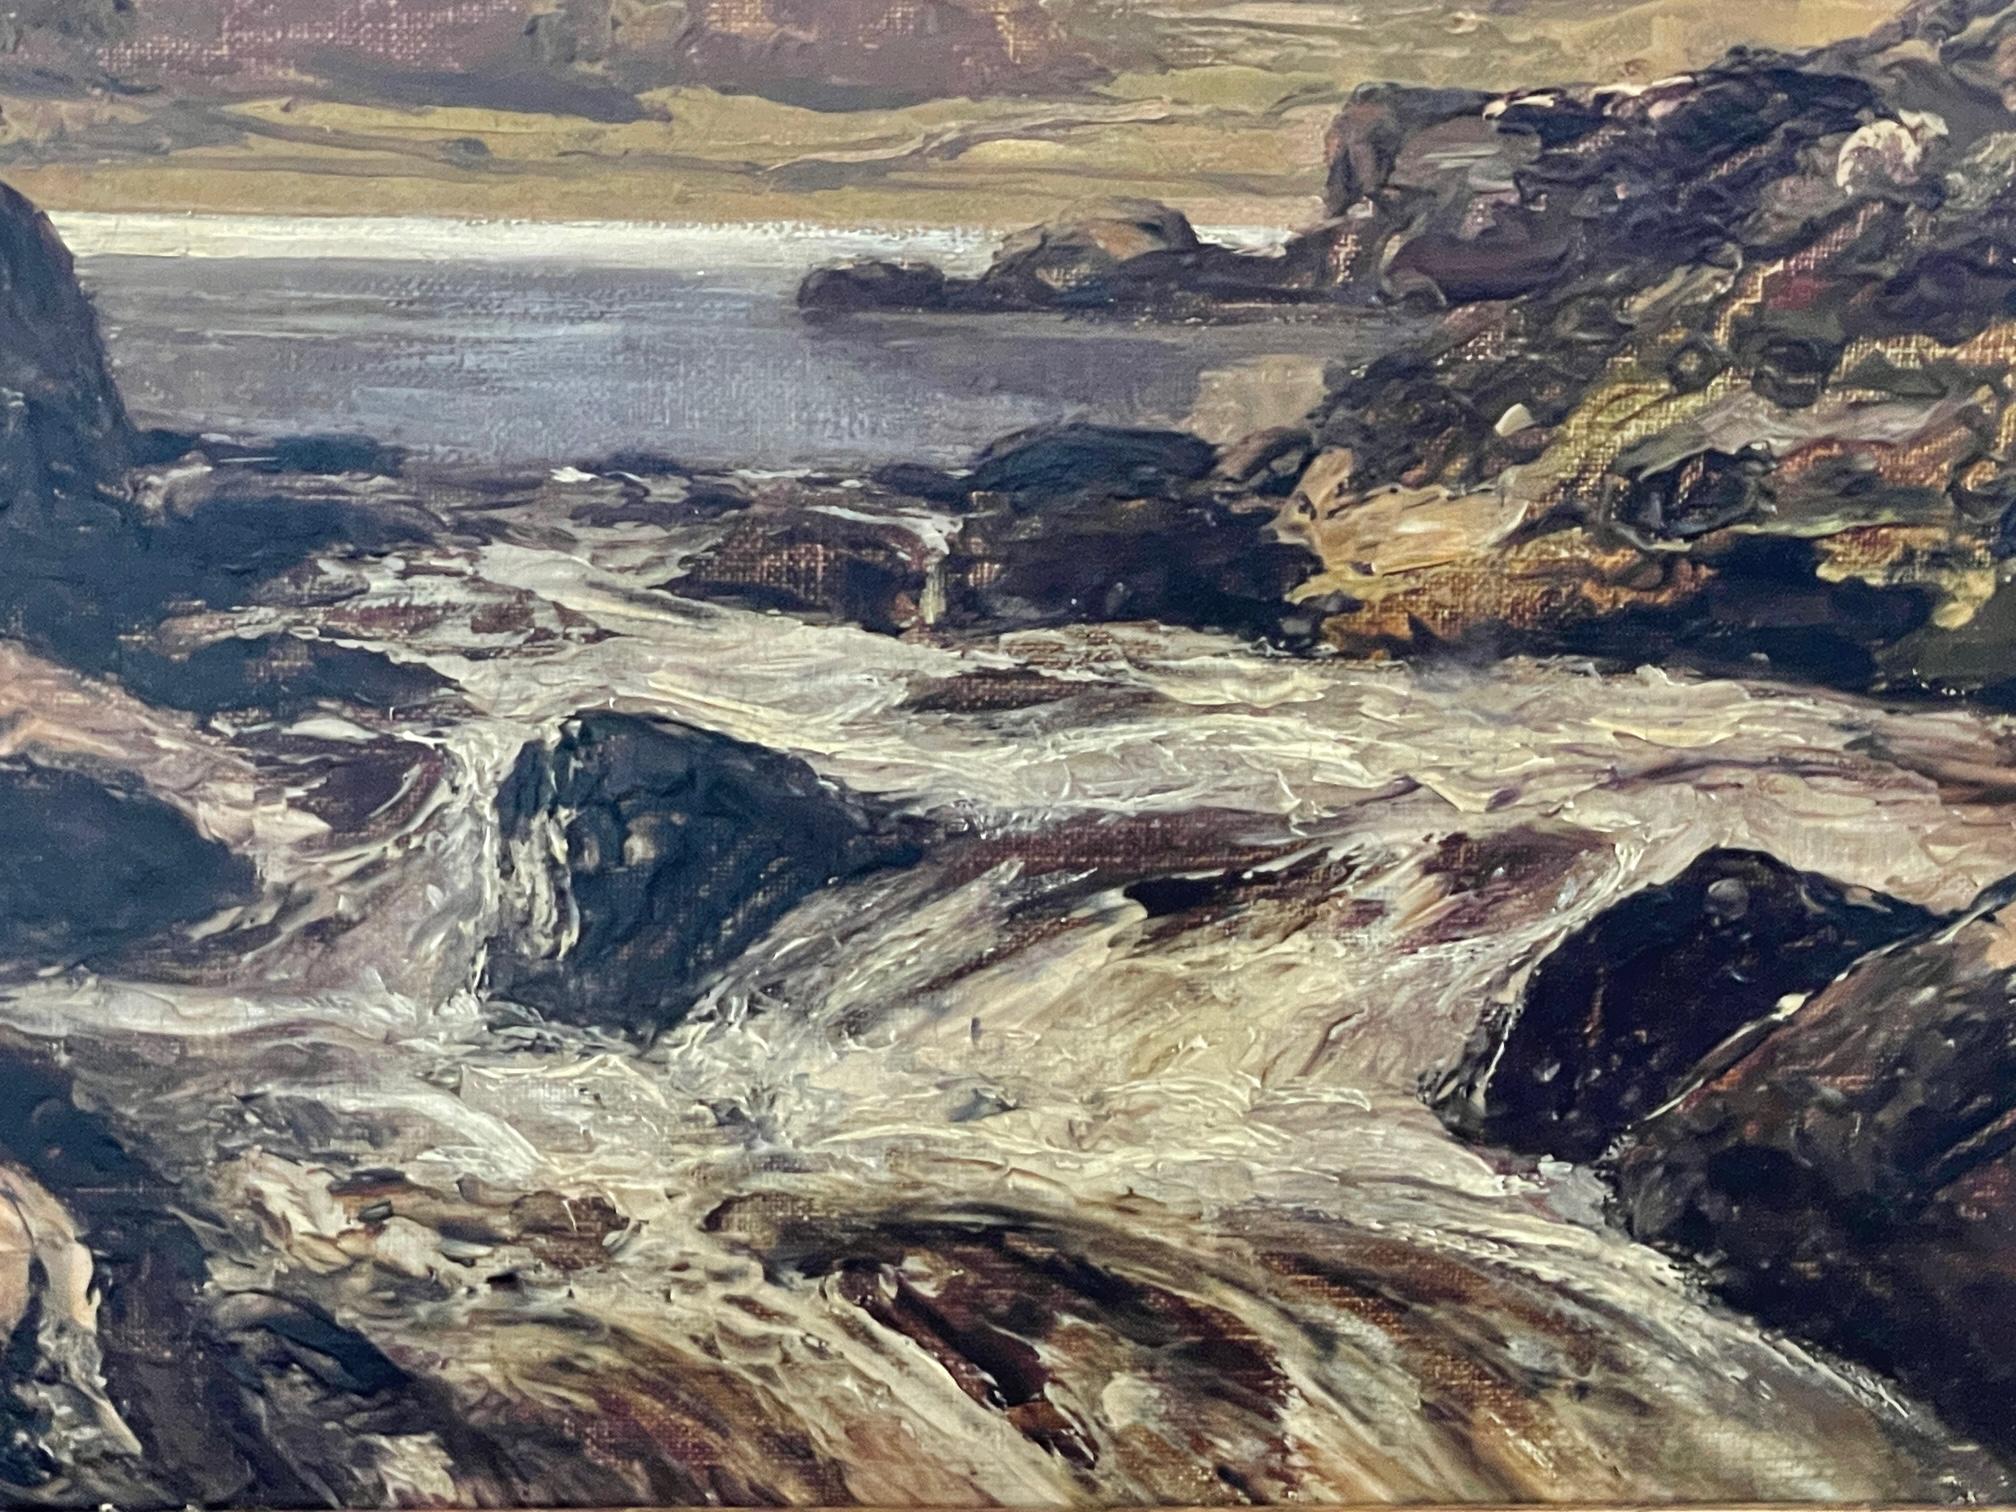 Lyn Crafnant, Wales and Wales, N Wales - Naturalisme Painting par Thomas Huson